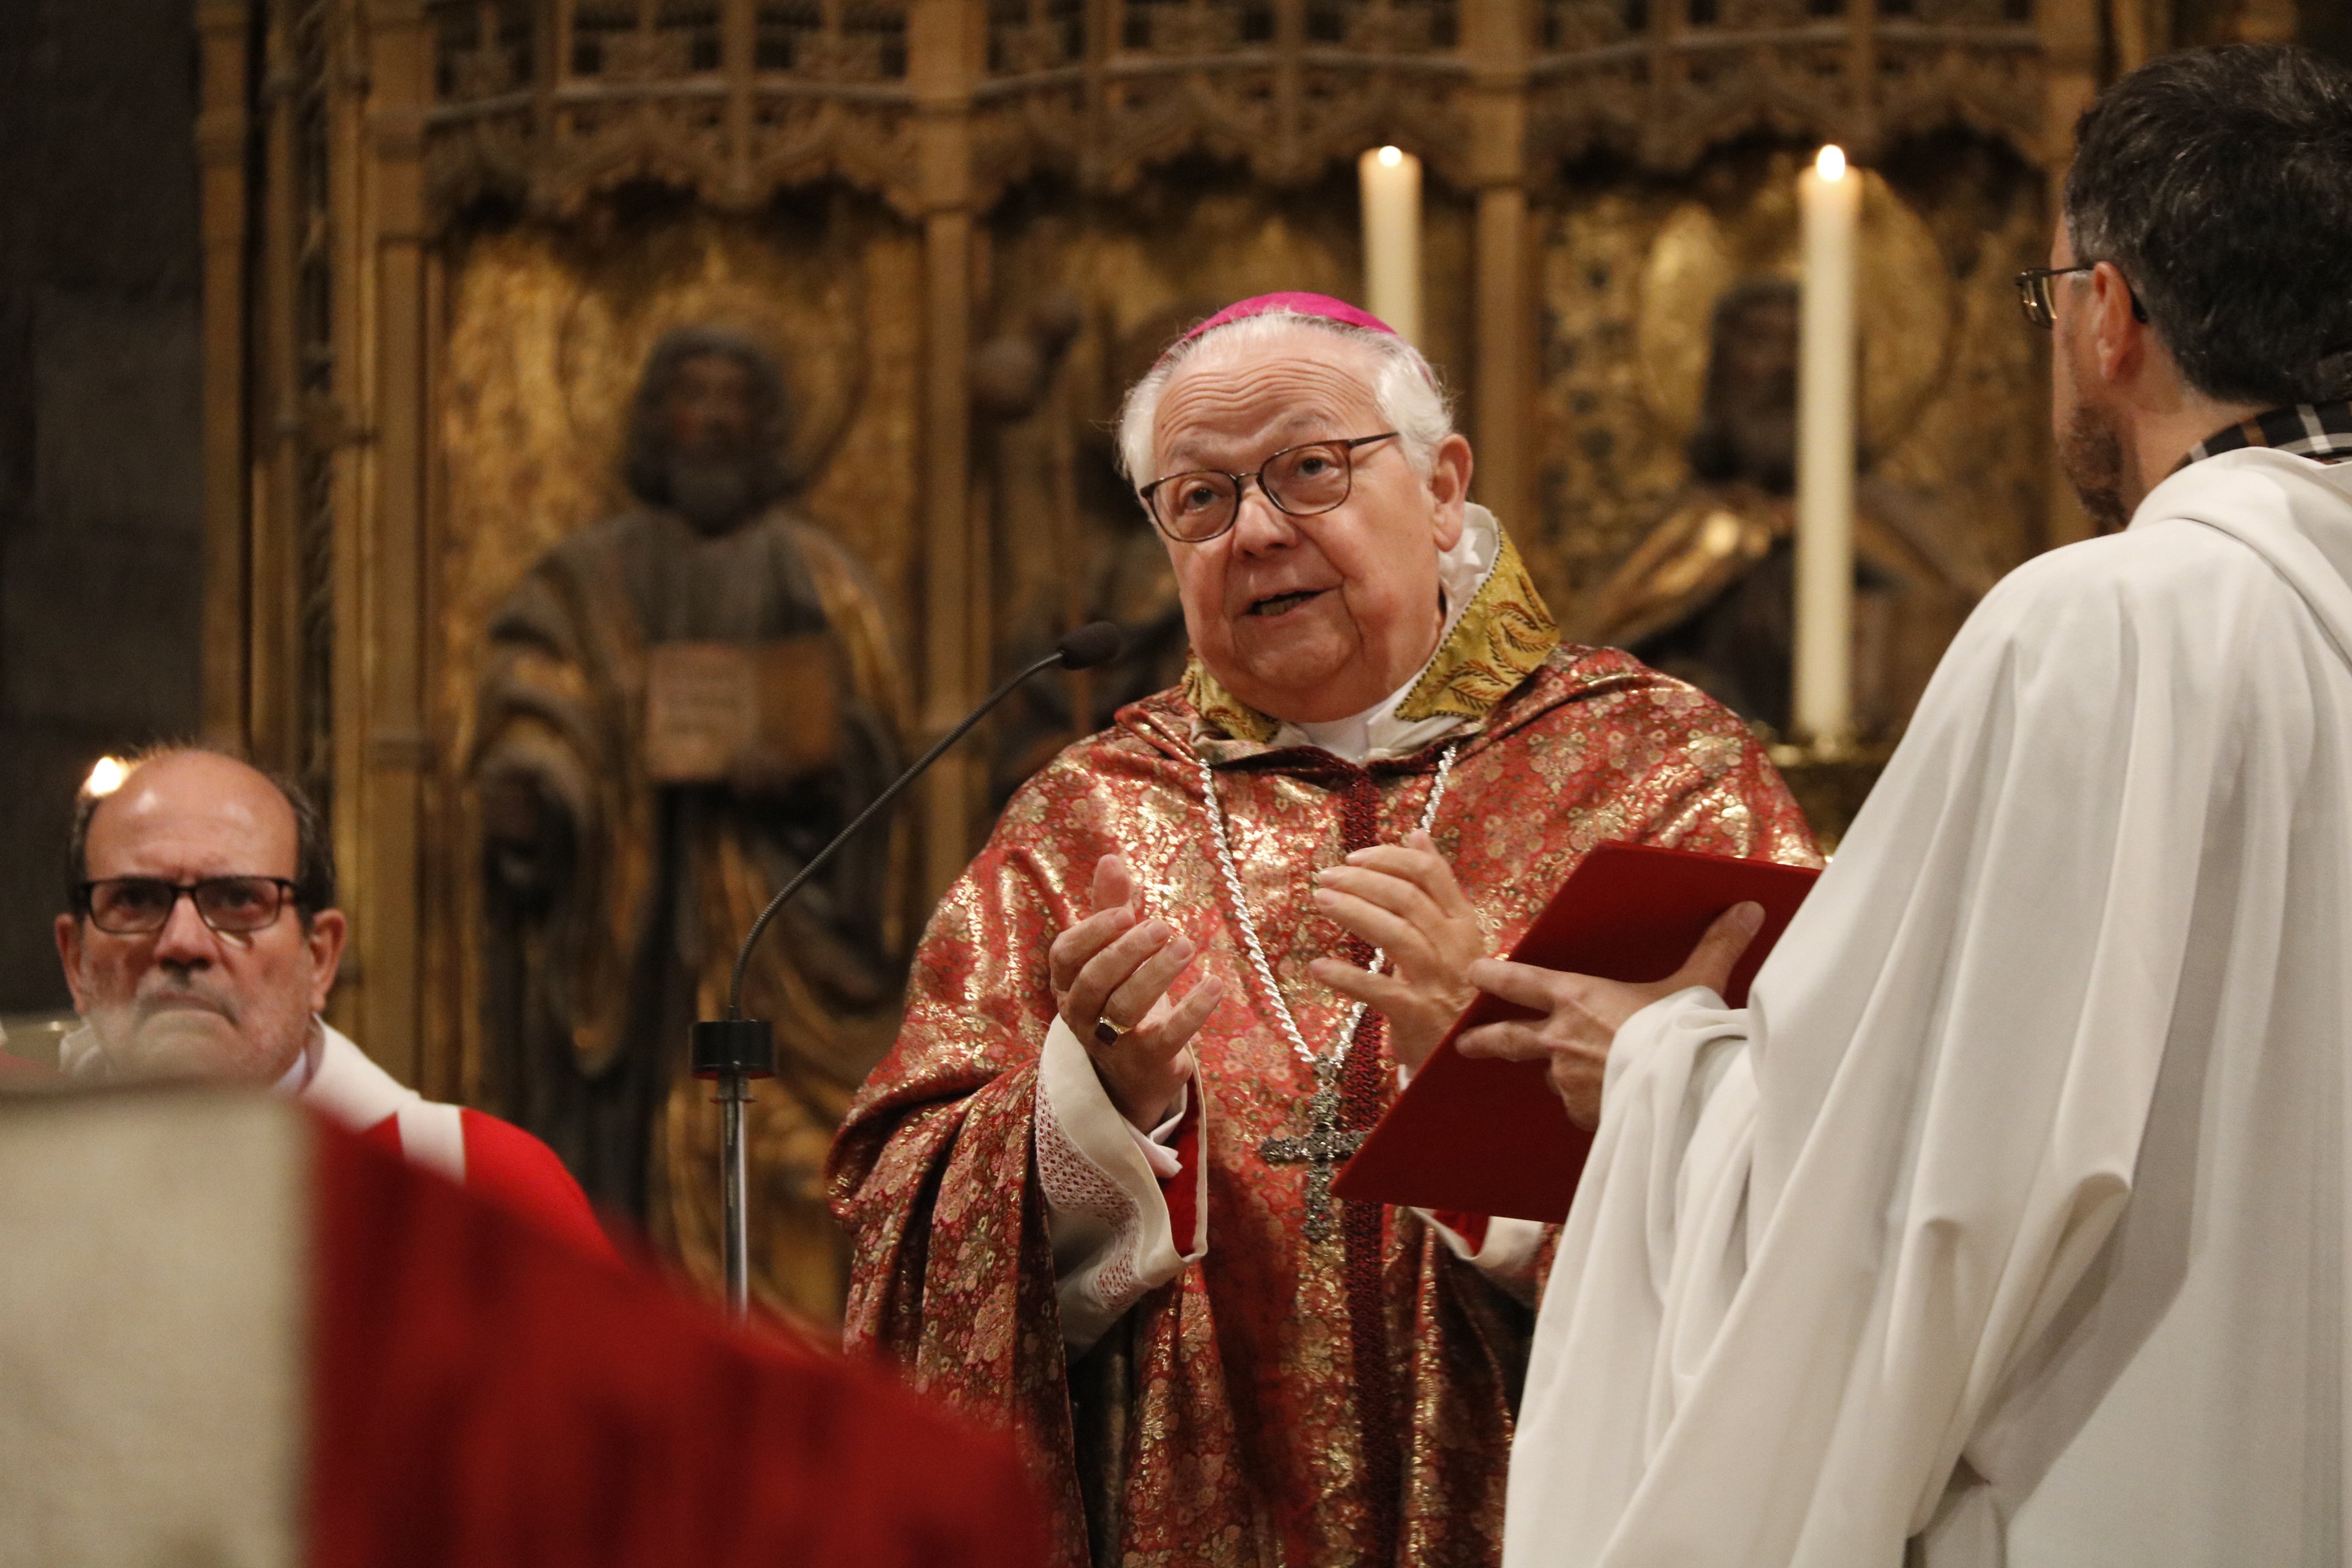 Obispo de Girona: "Franco no tiene que ser enterrado en una basílica"